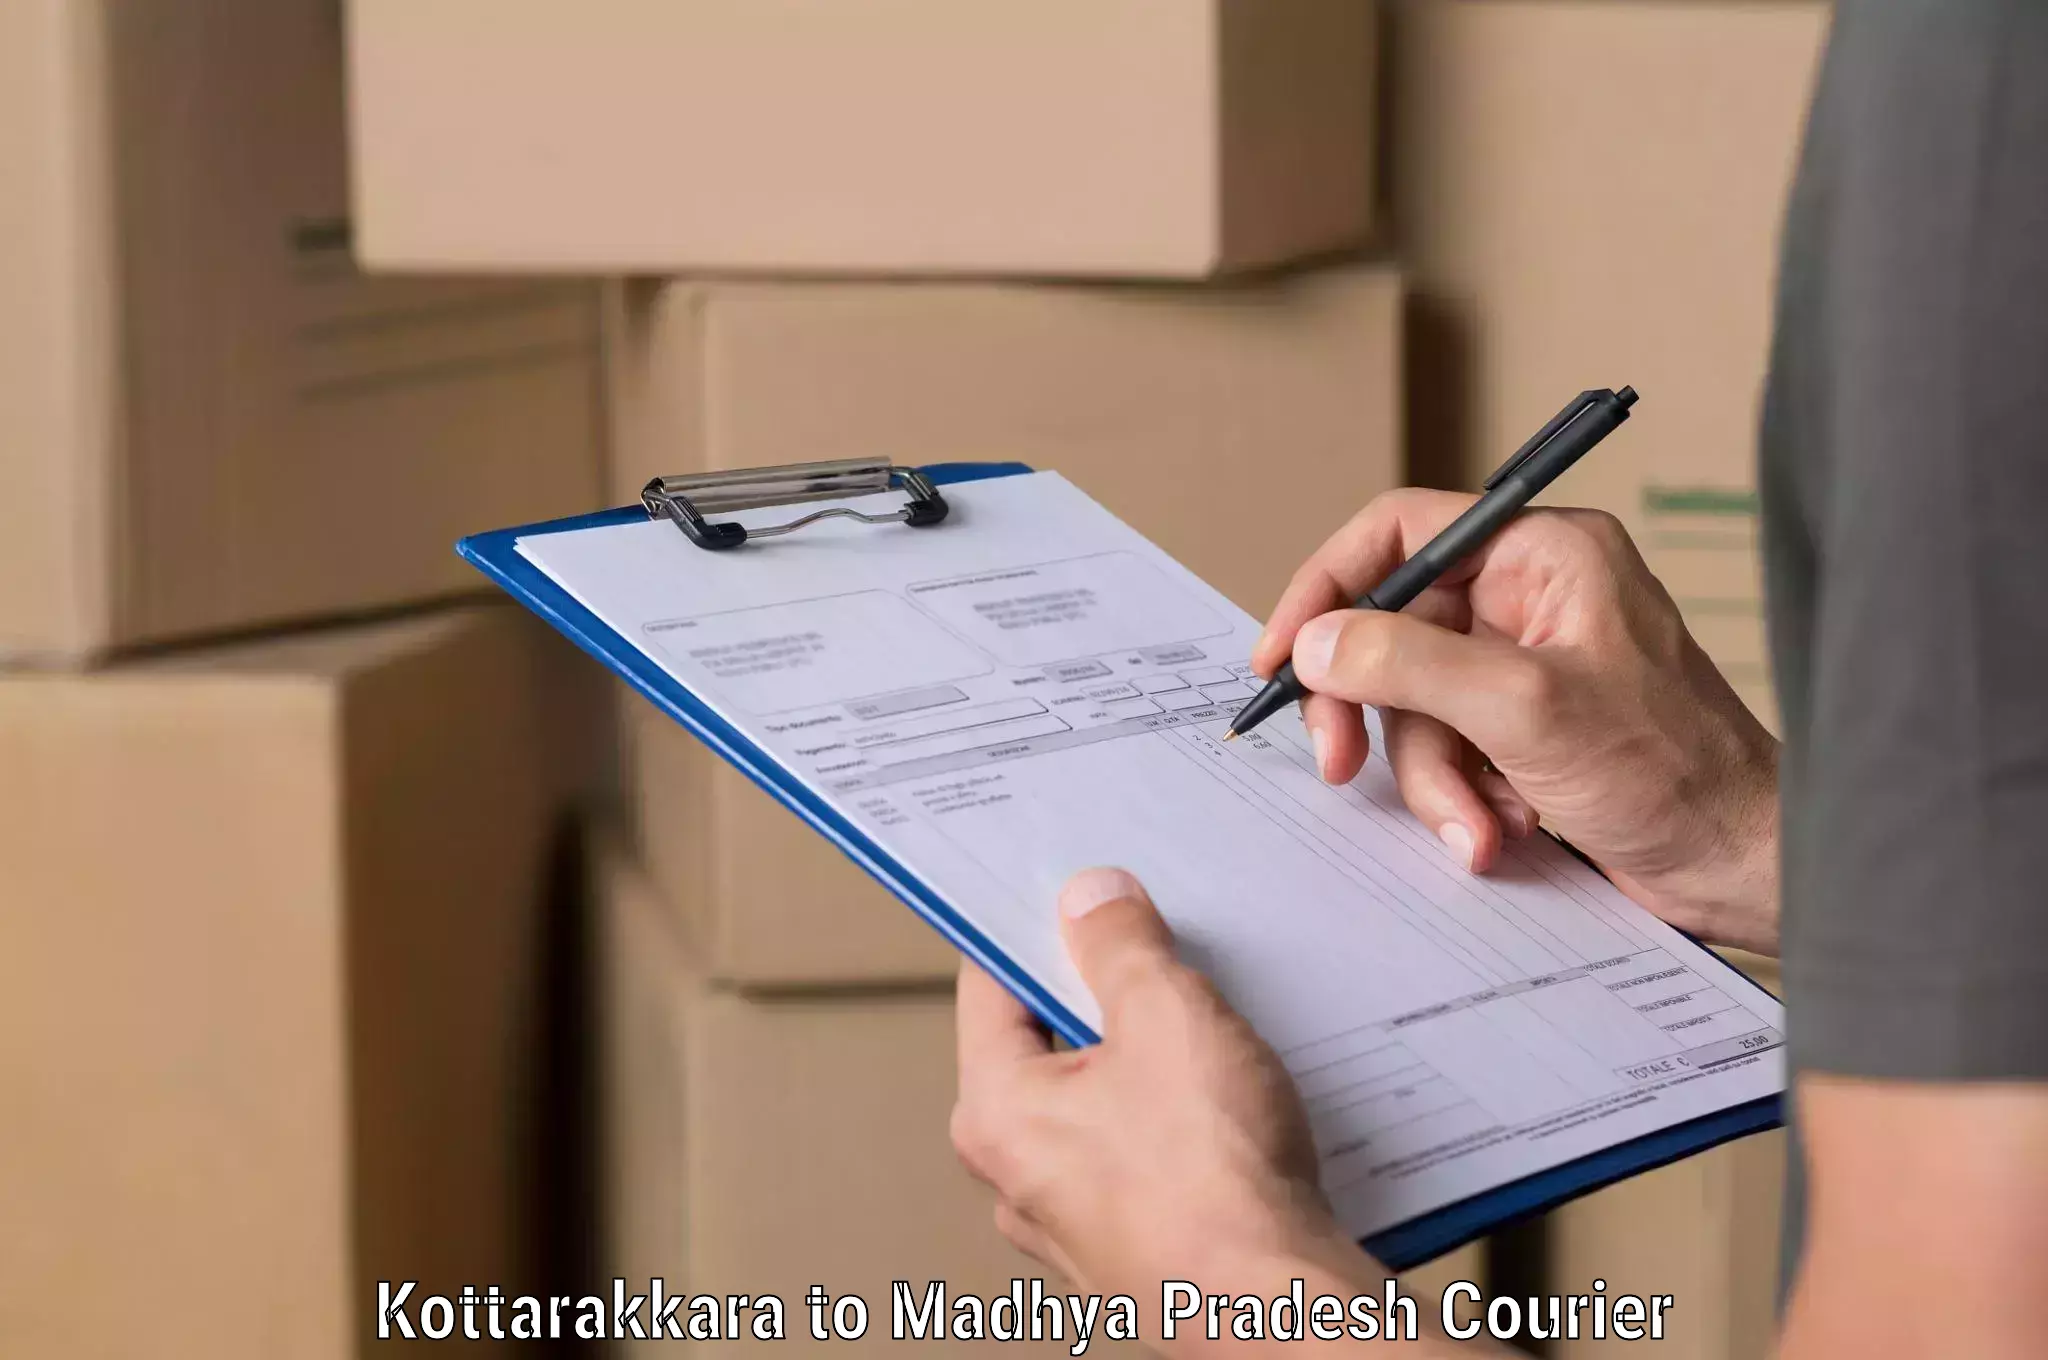 Express courier facilities Kottarakkara to Kotma